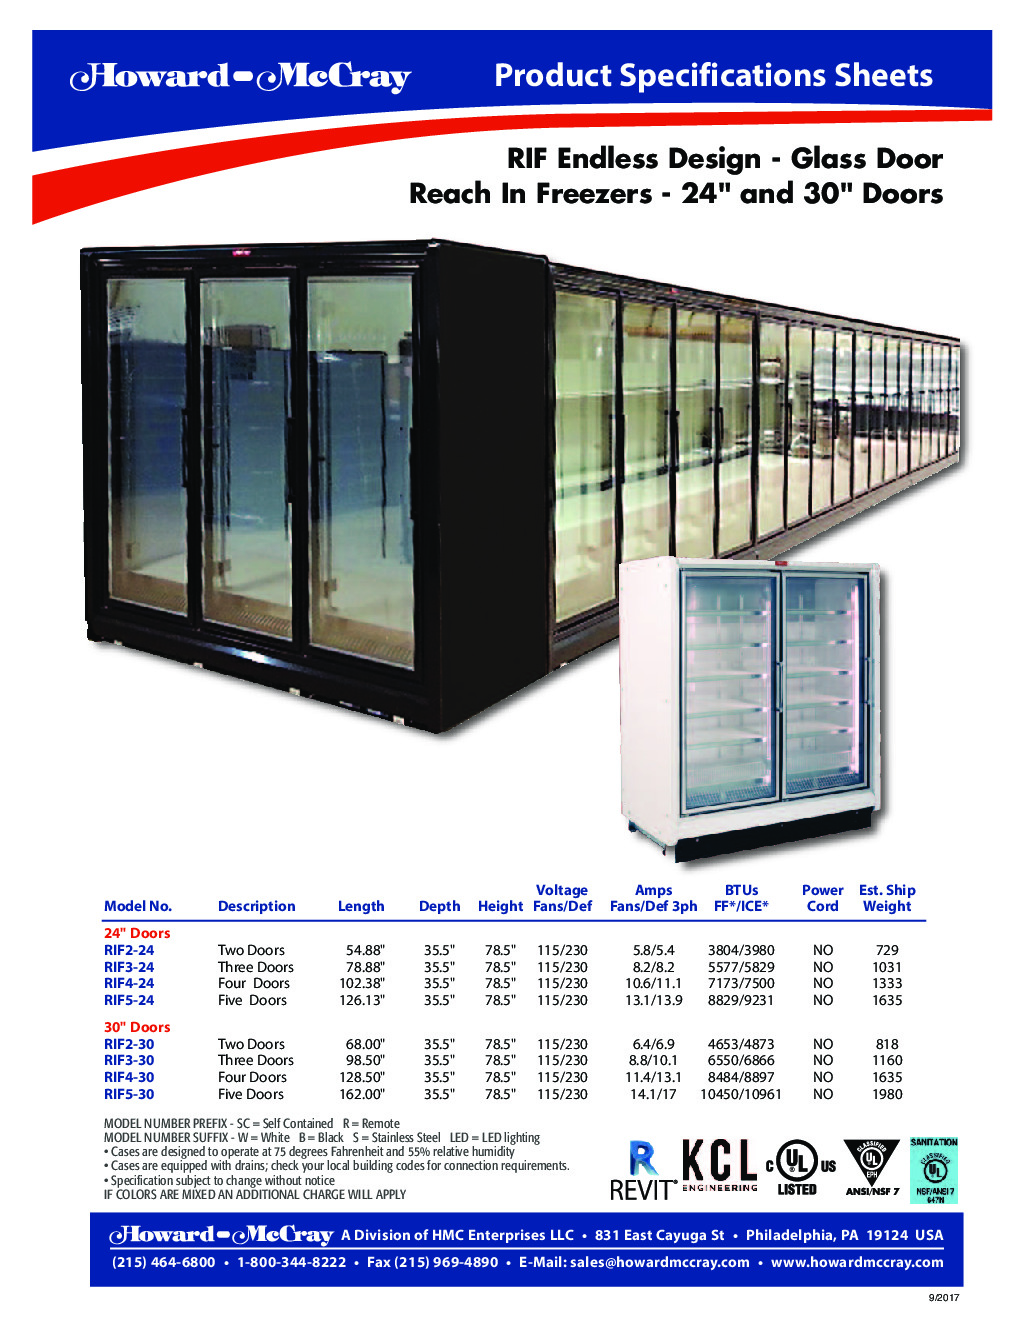 Howard-McCray RIF4-30-LED Merchandiser Freezer